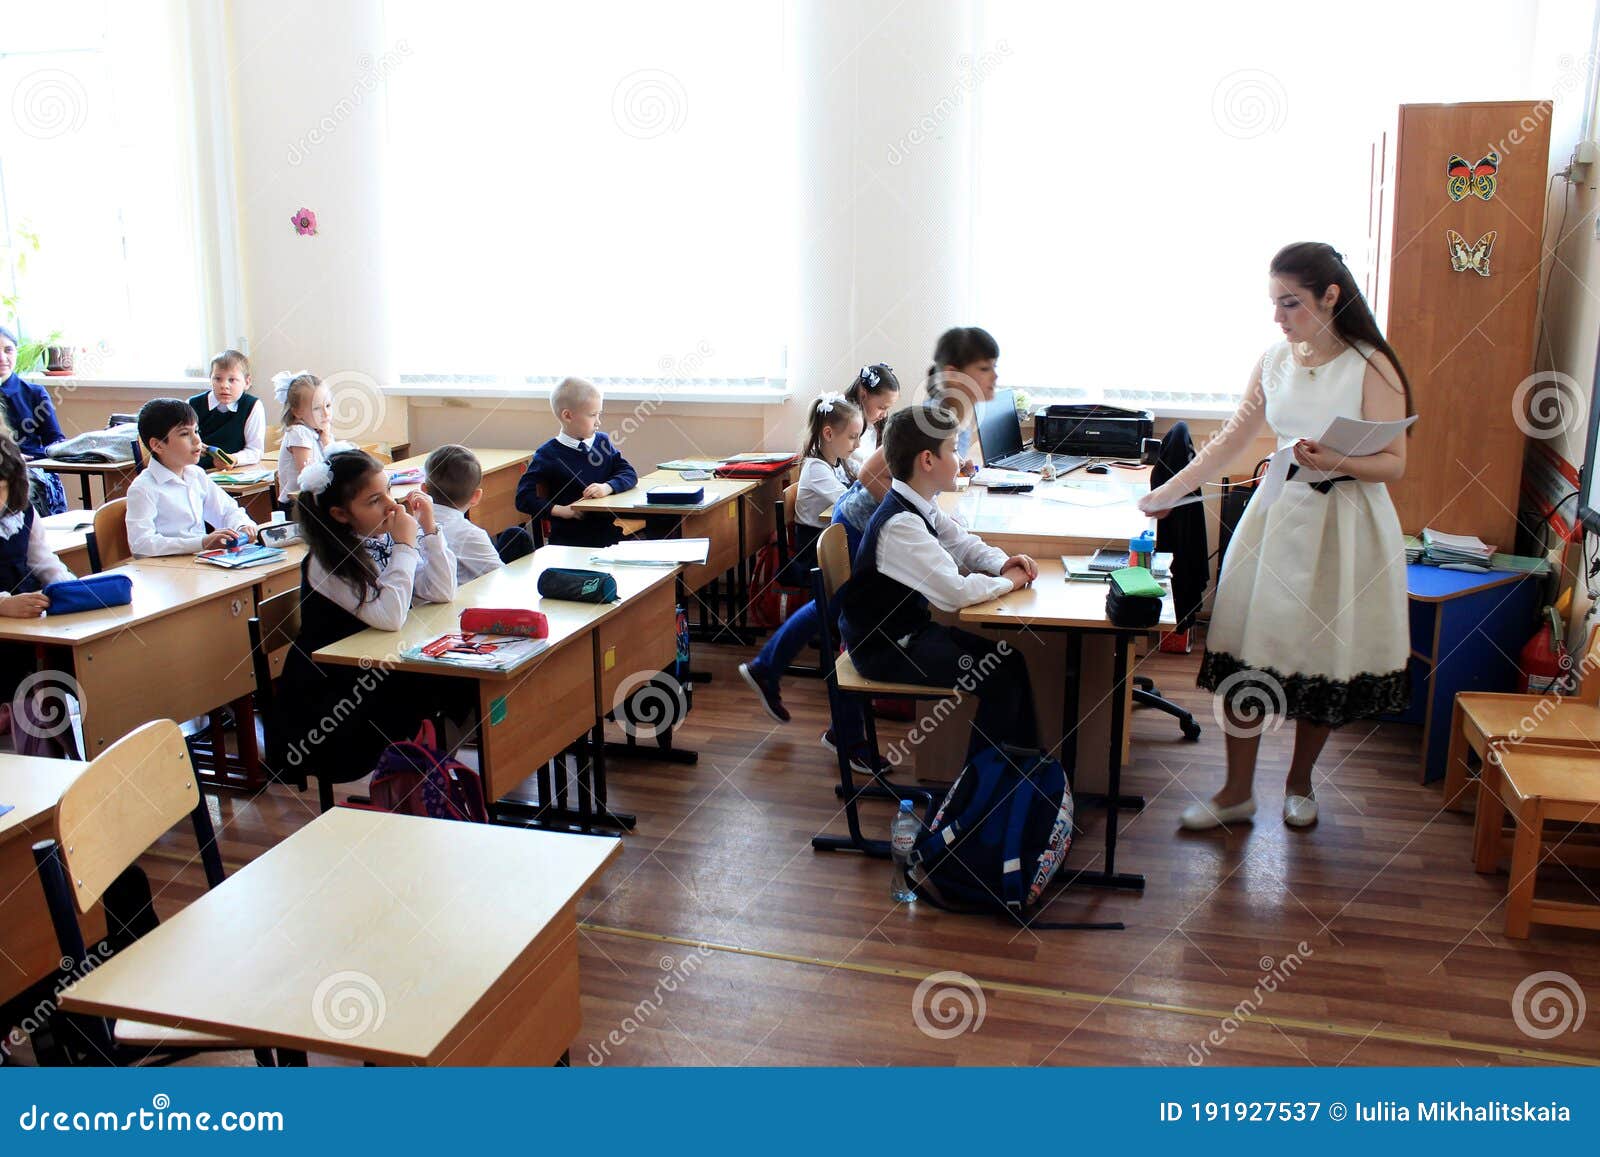 education in russia.con